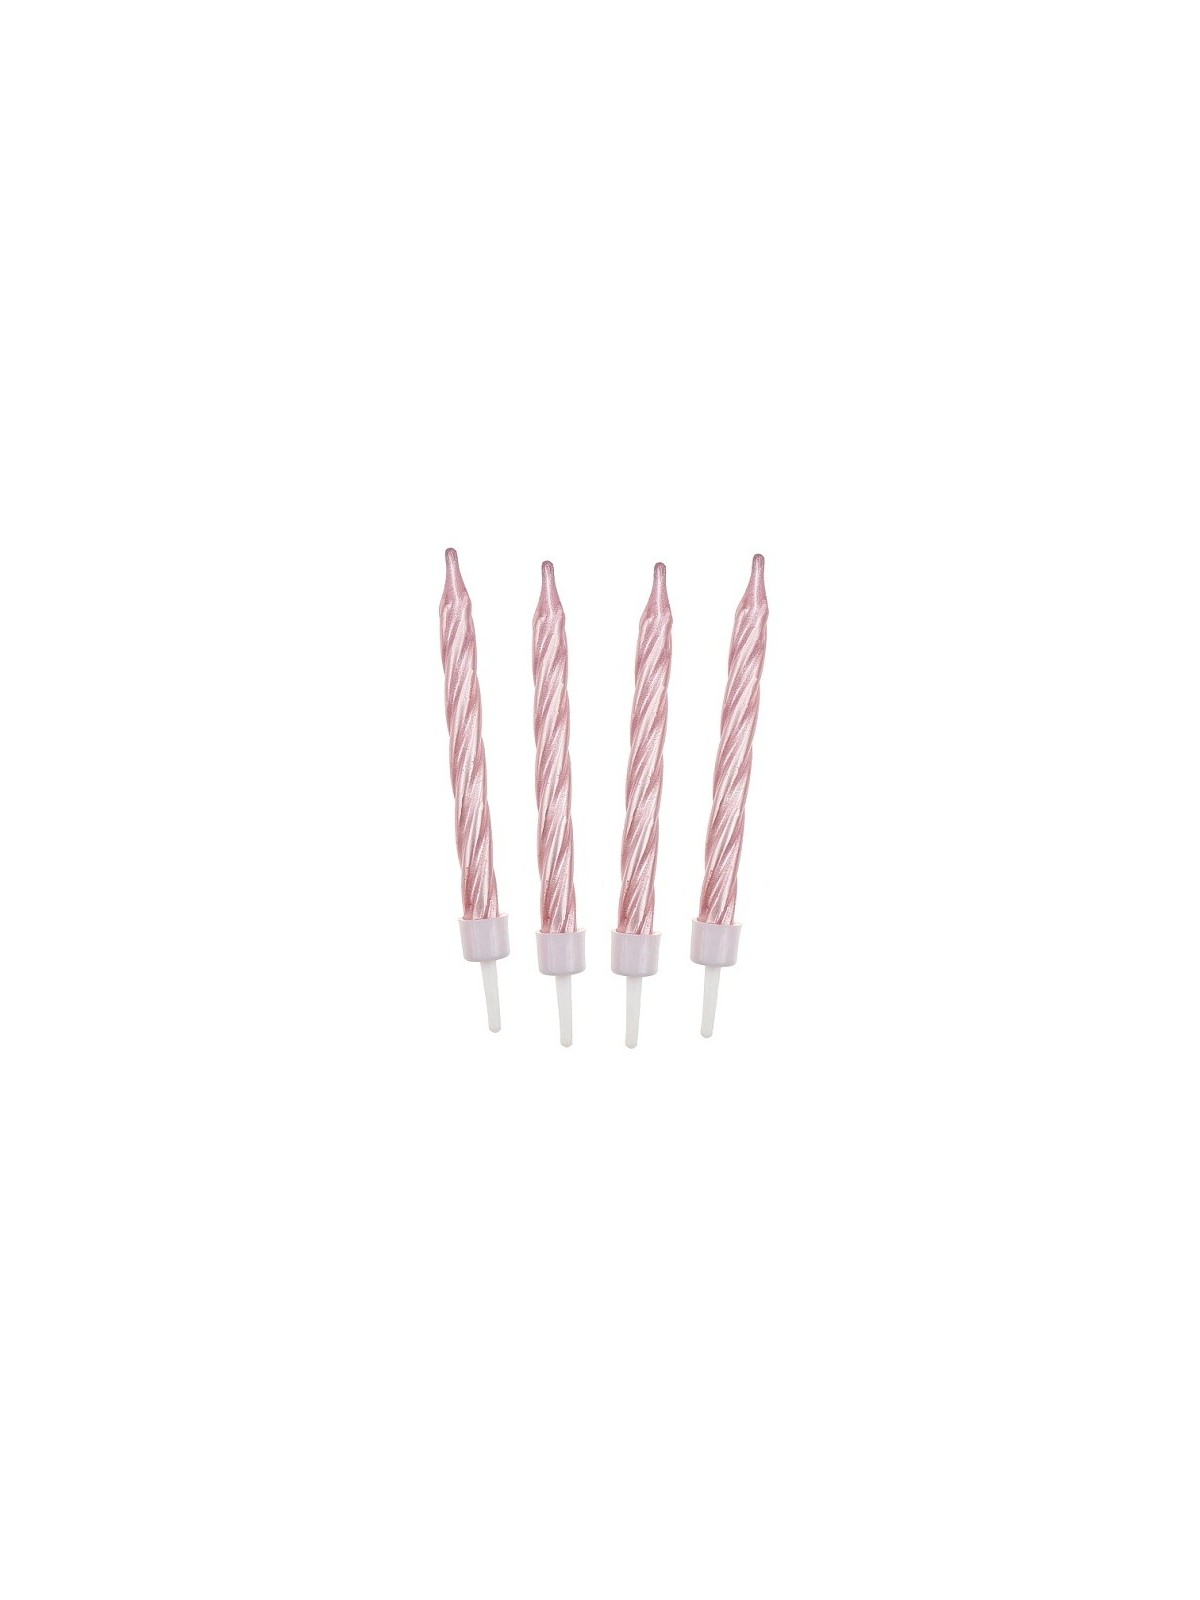 Cake candle Spiral - pink - 12pcs